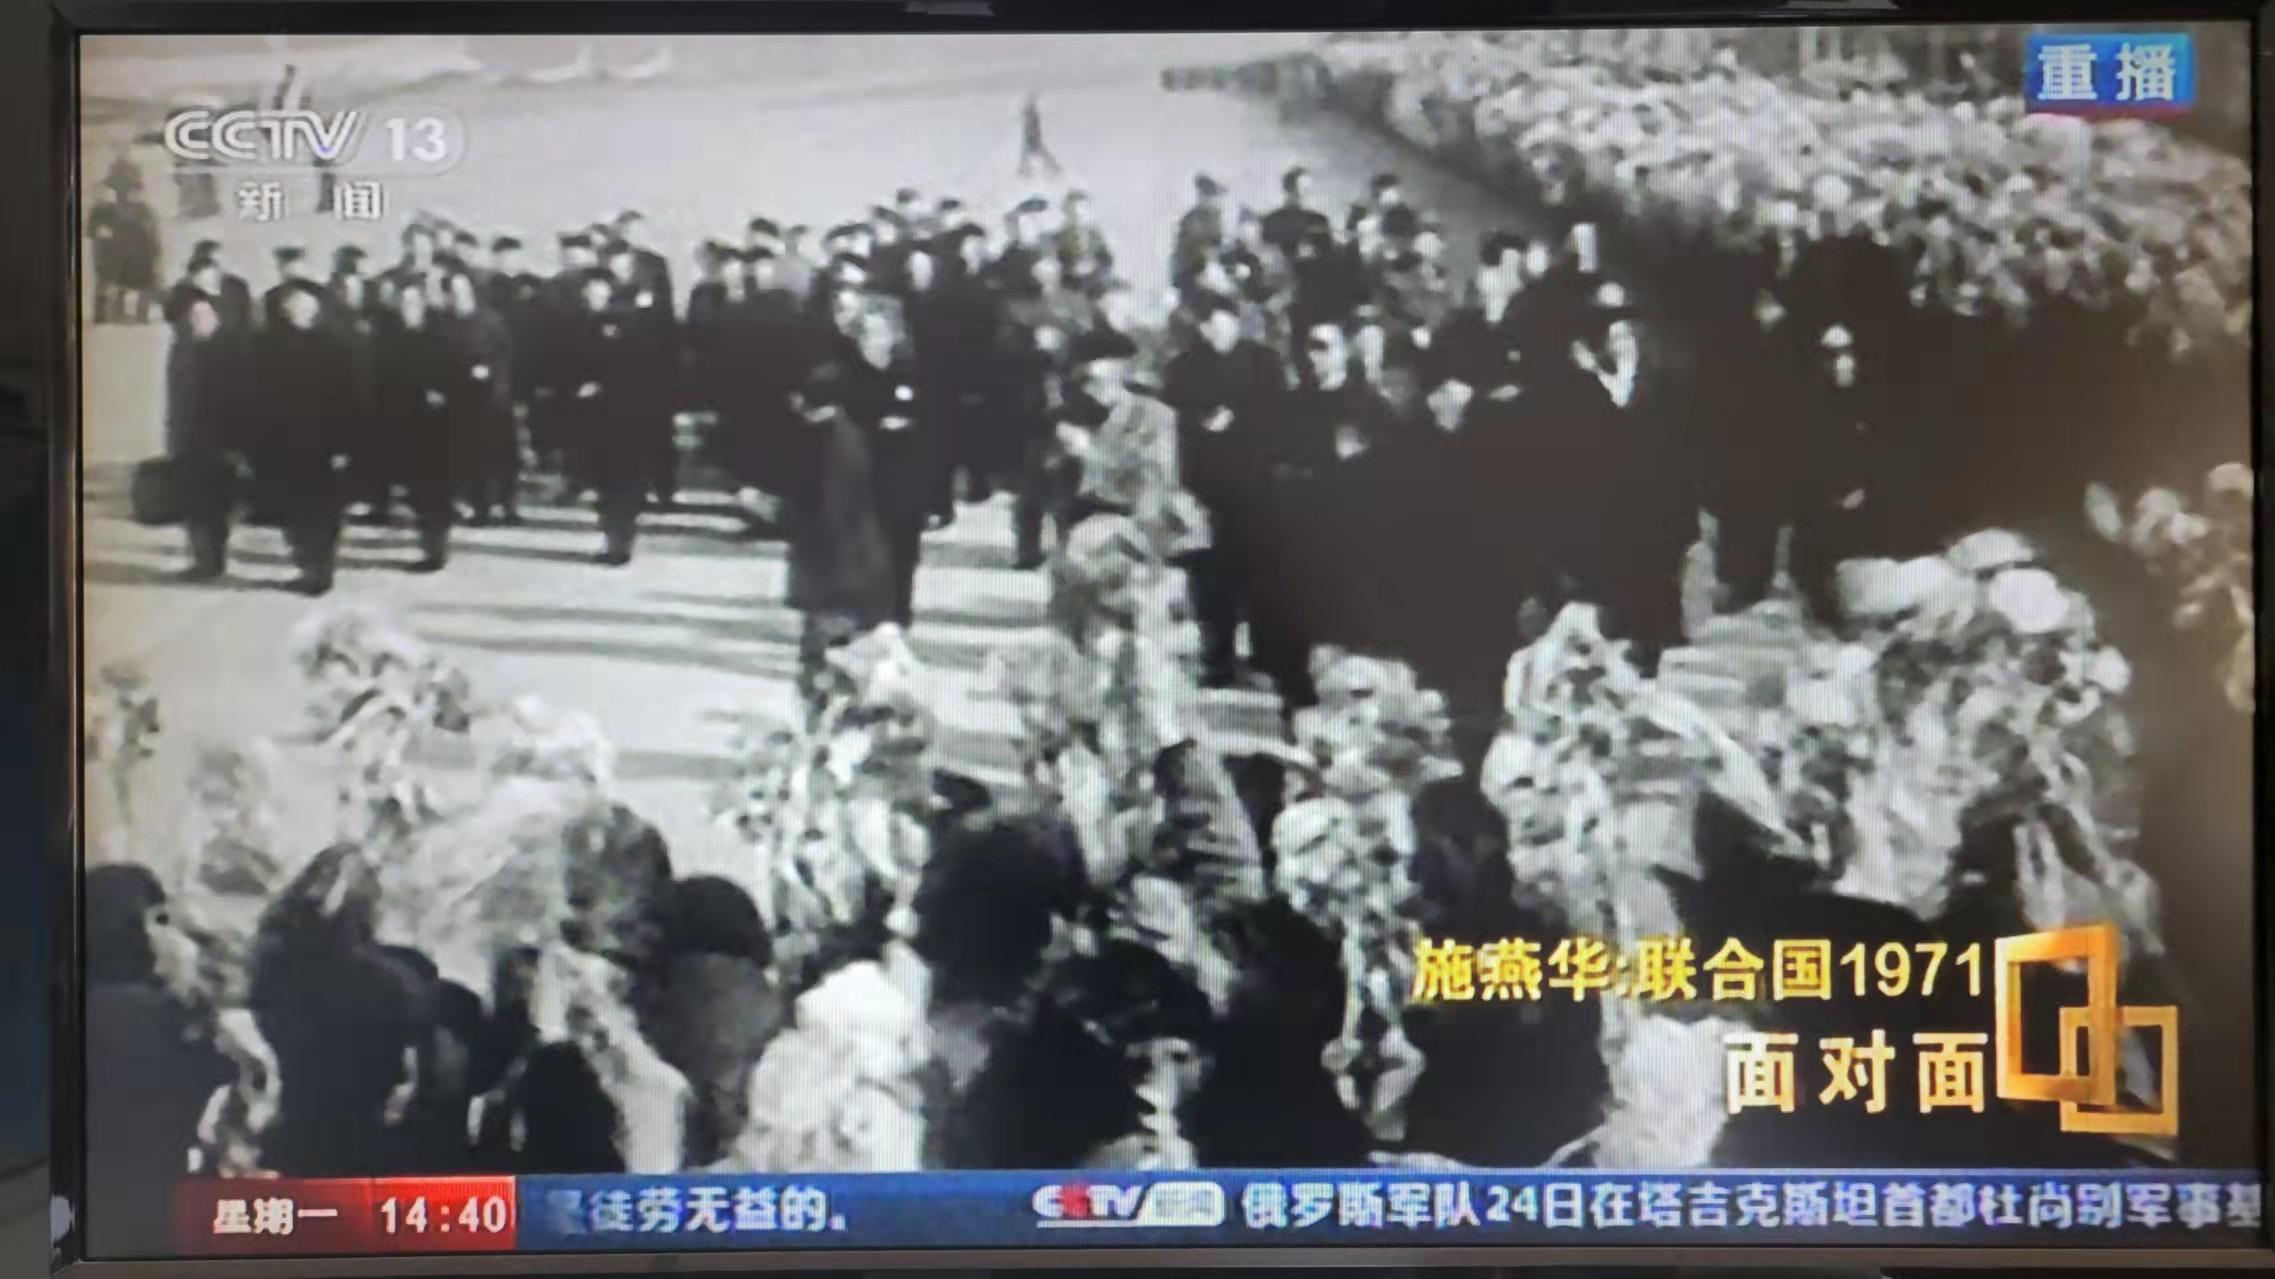 중국 관영 CCTV는 중국의 유엔 가입 50주년을 맞아 인터뷰 프로그램 등 특집 프로그램을 편성해 방송했다.